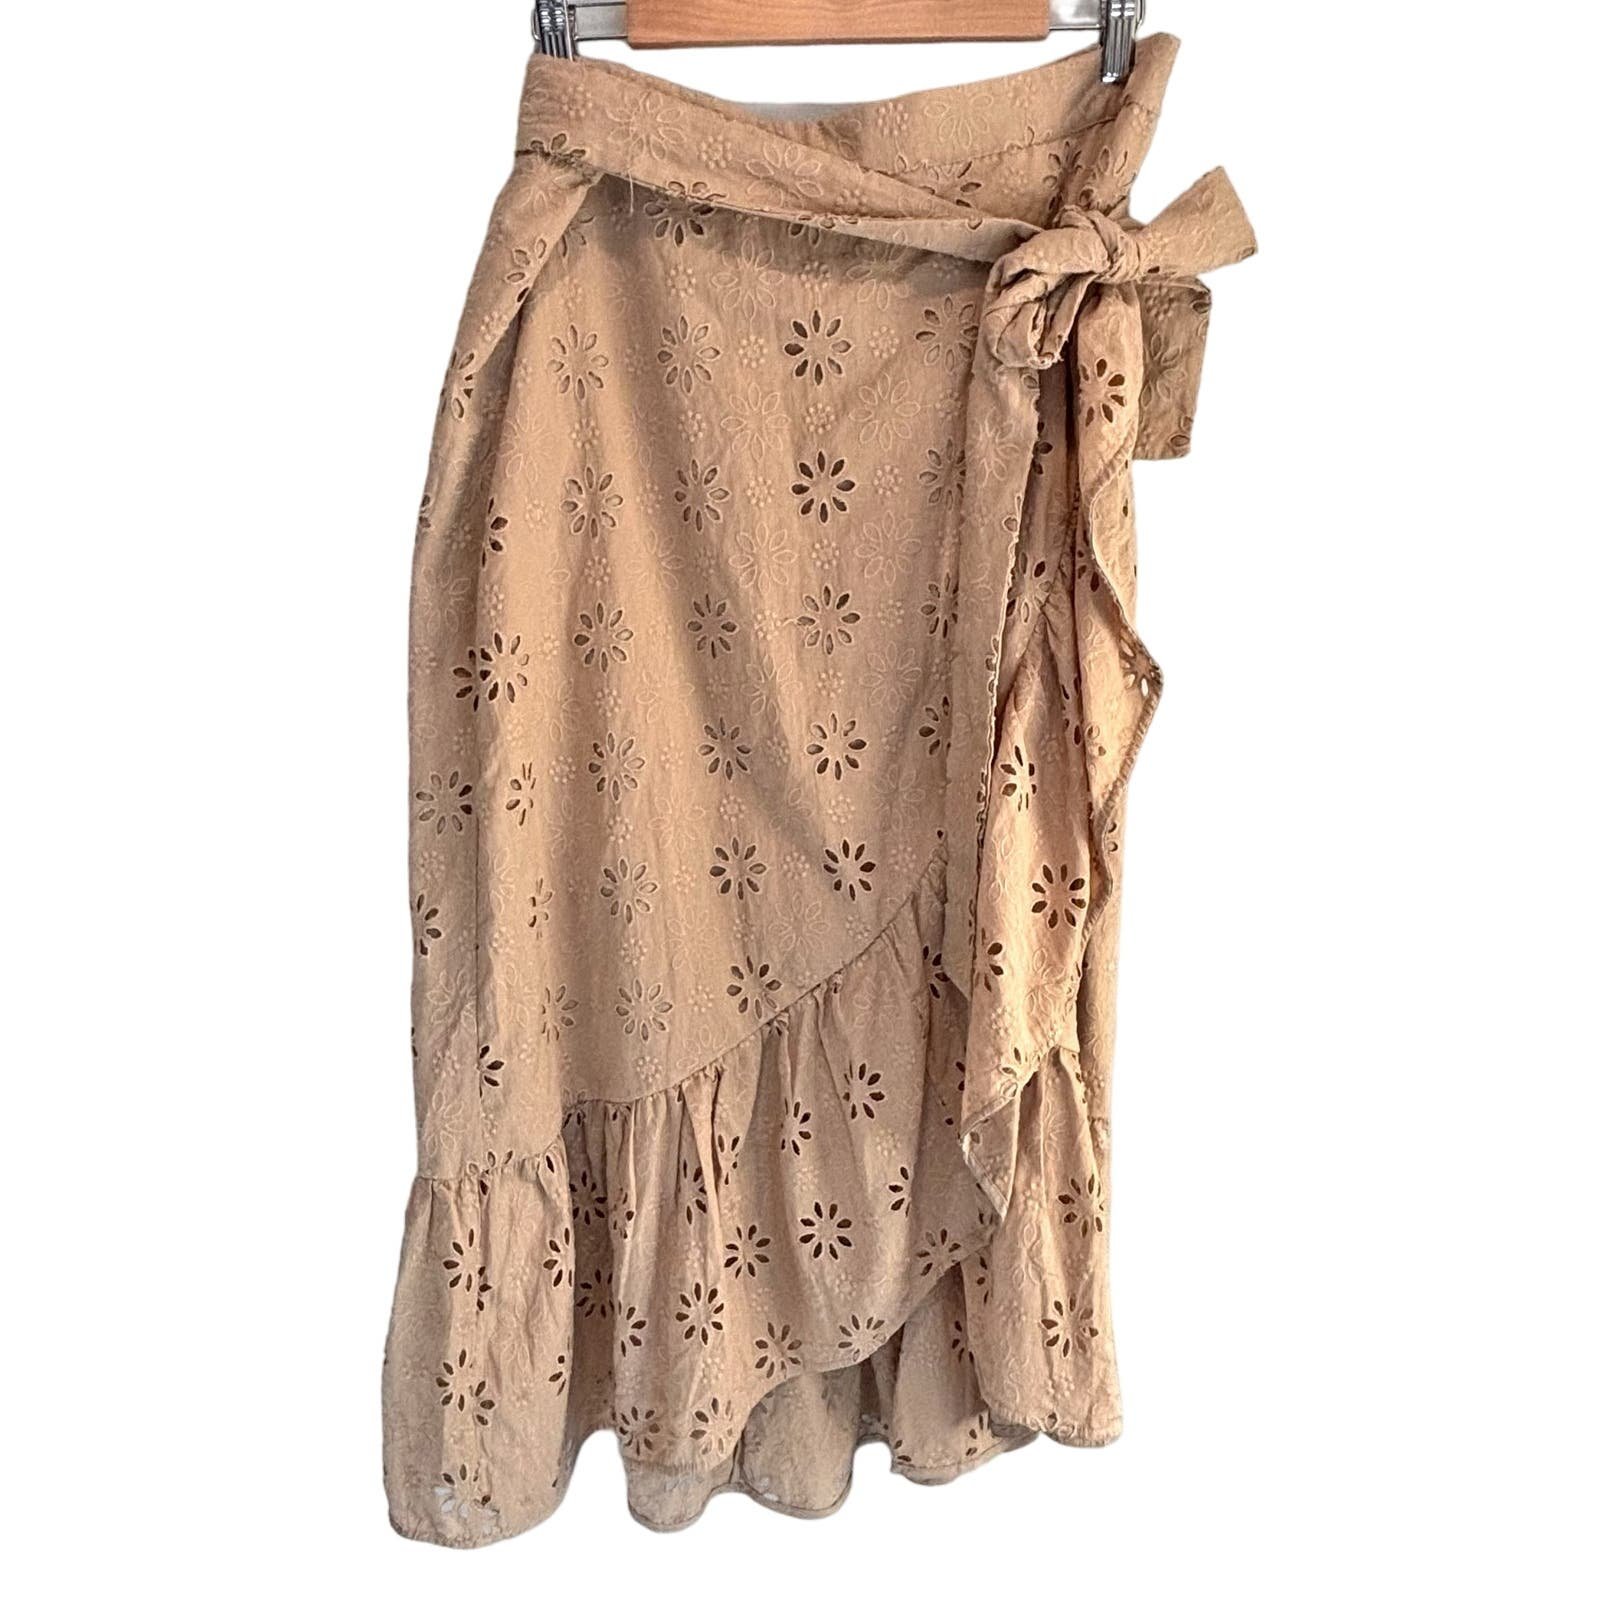 Nice Ann Taylor NWT Tan Eyelet Faux Wrap Midi Skirt - size 14 hPUqKrRbn Store Online